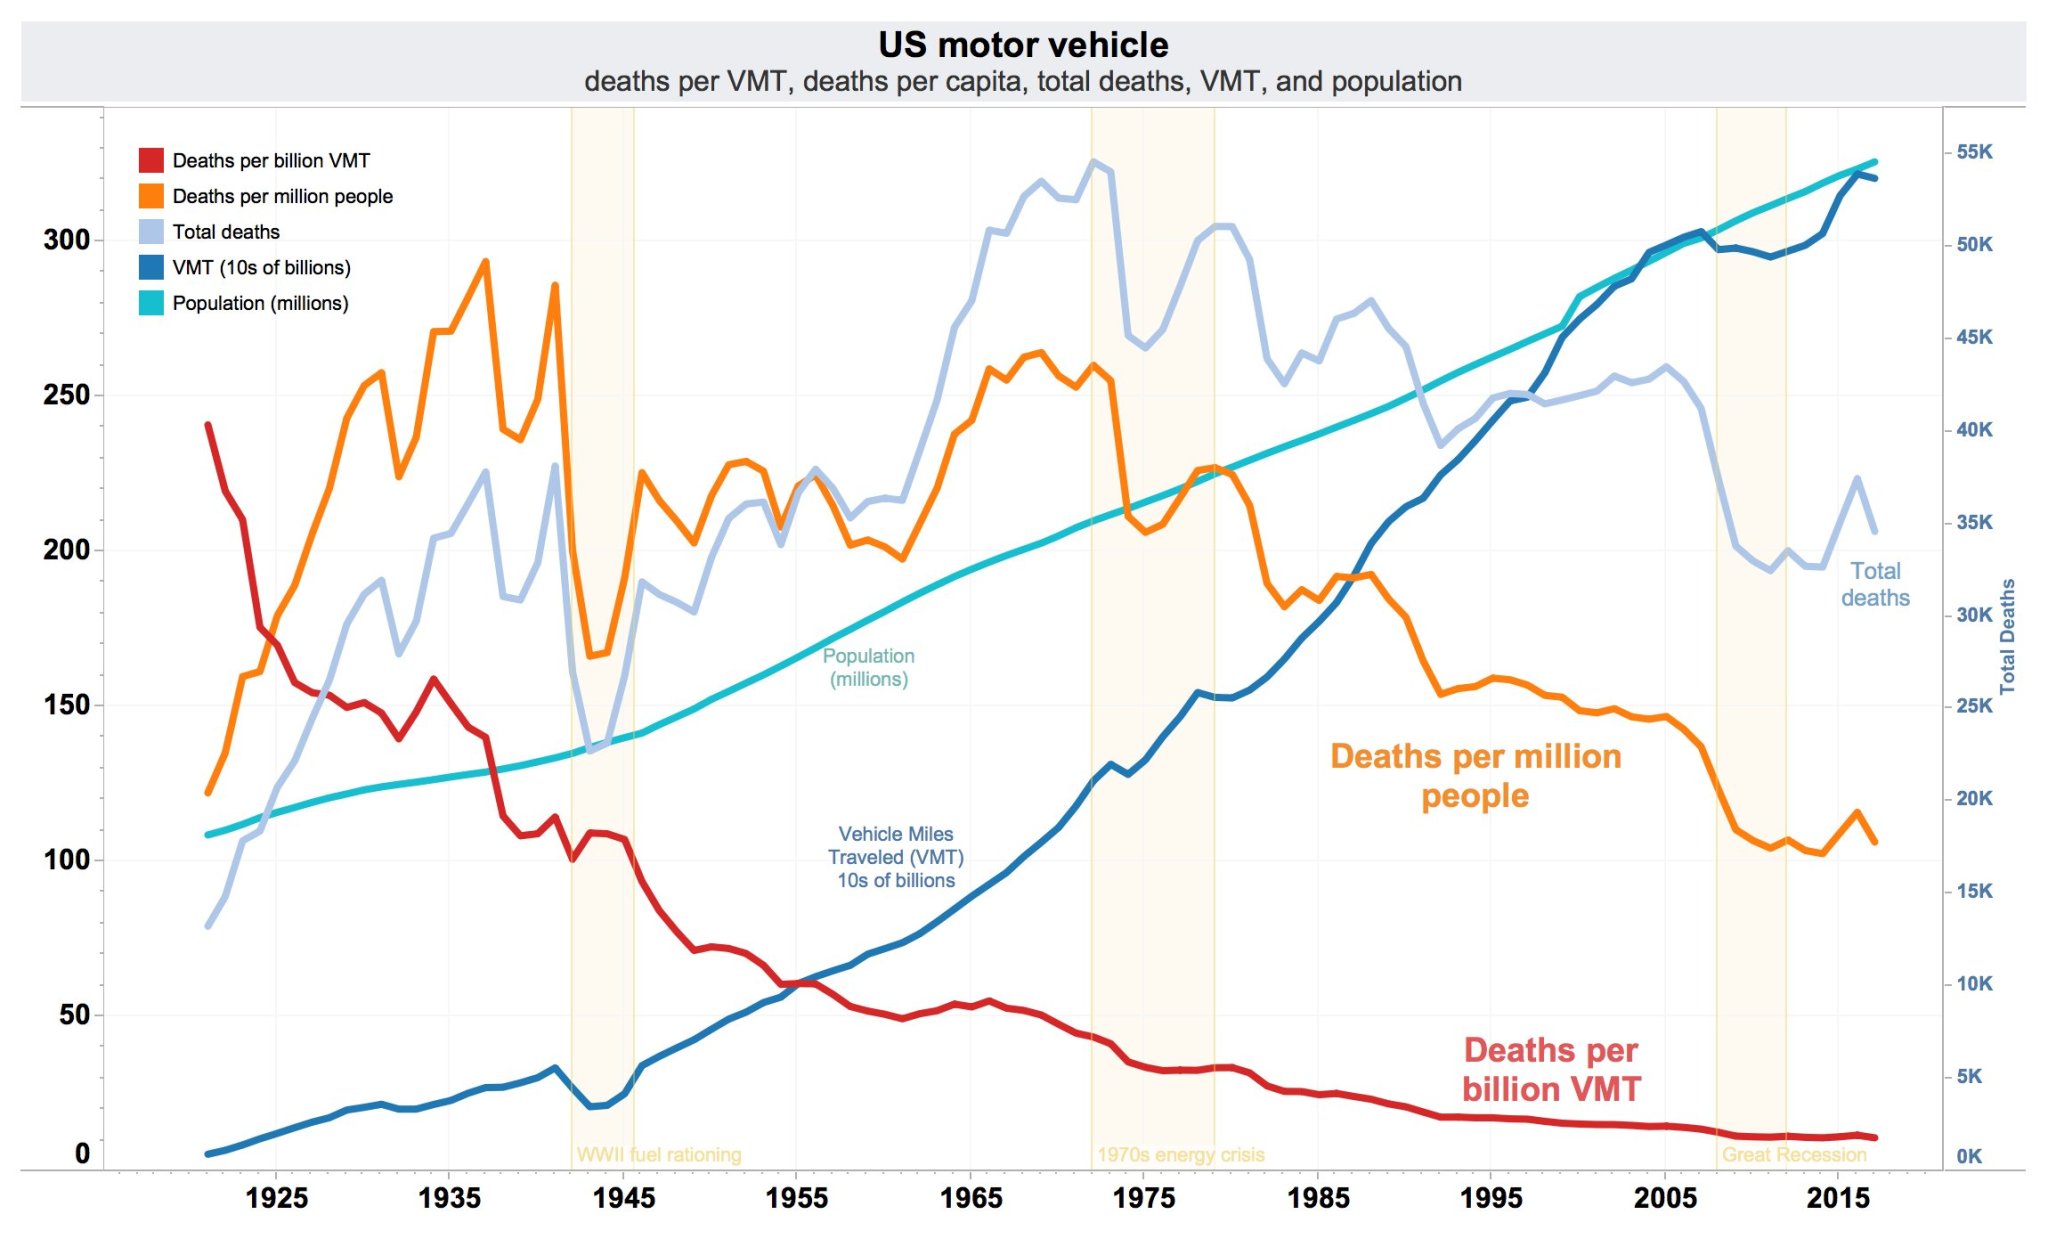 US_traffic_deaths_per_VMT,_VMT,_per_capita,_and_total_annual_deaths.jpg